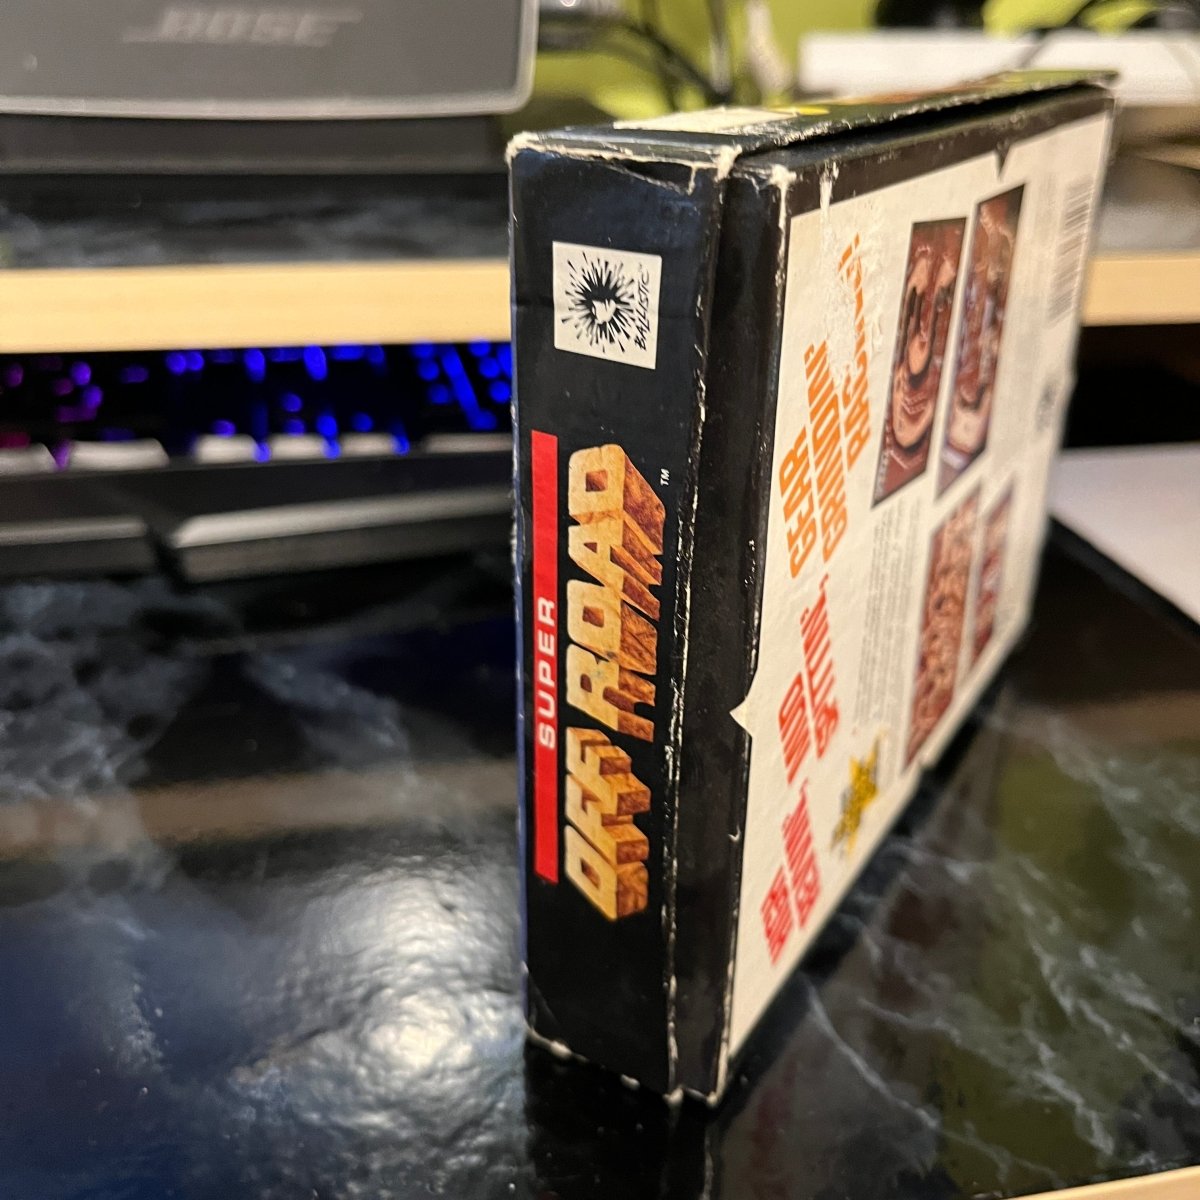 Buy Super Off Road (Box) Sega mega drive game -@ 8BitBeyond